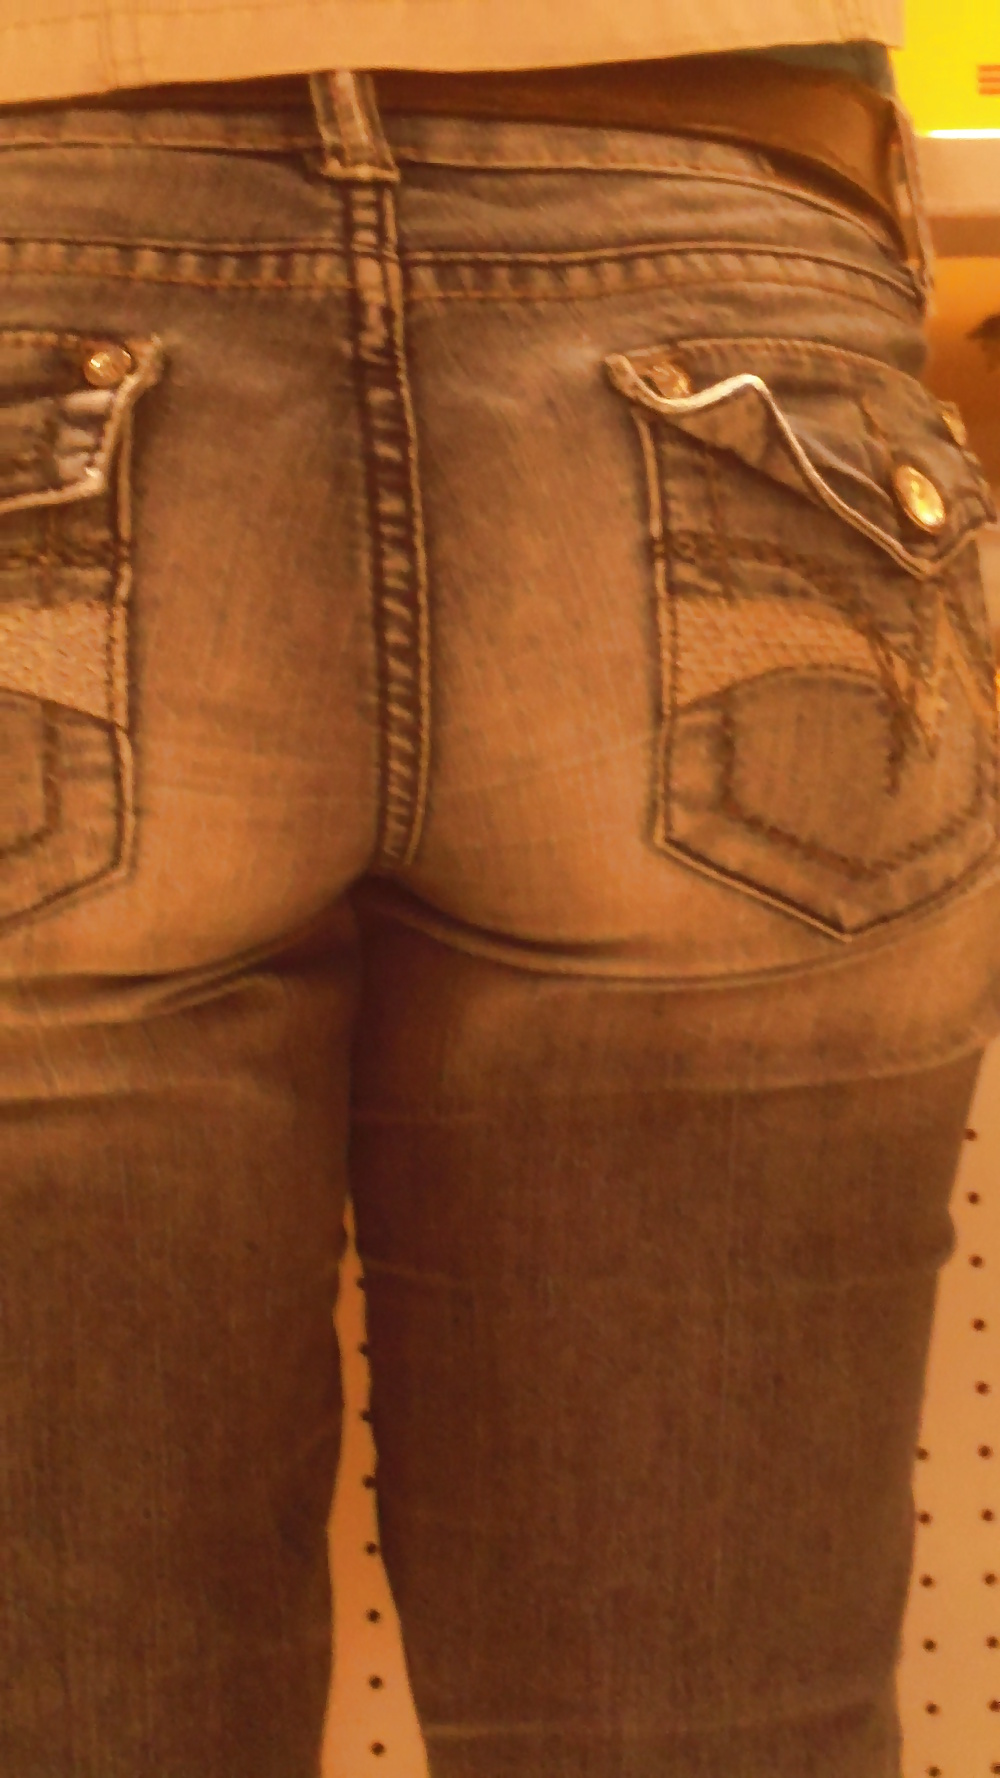 Popular teen girls ass & butt in jeans Part 6 #32010383